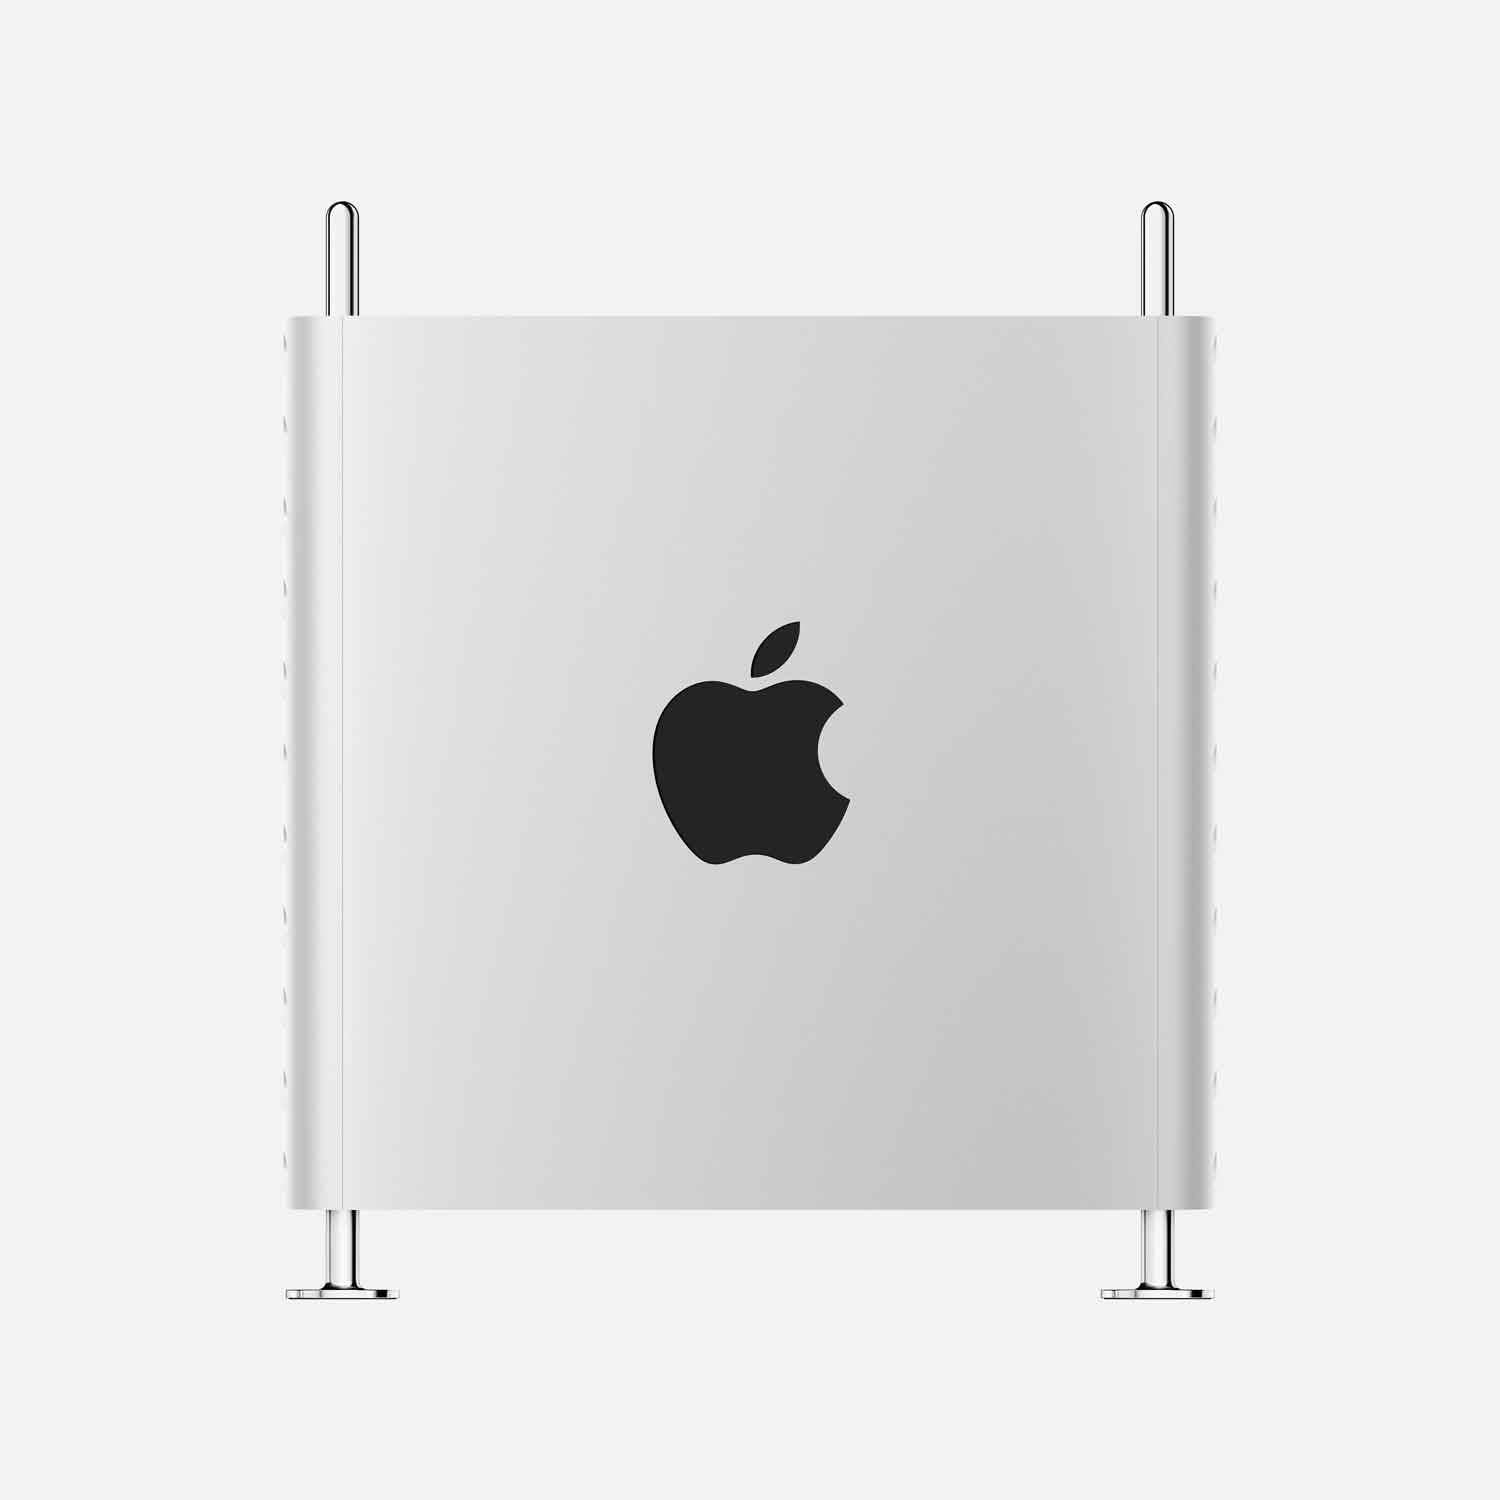 Mac Pro Tower - M2 Utra - M2Ultra-24-76 - 192GB - 4TBSSD - Standfuß - Trackpad